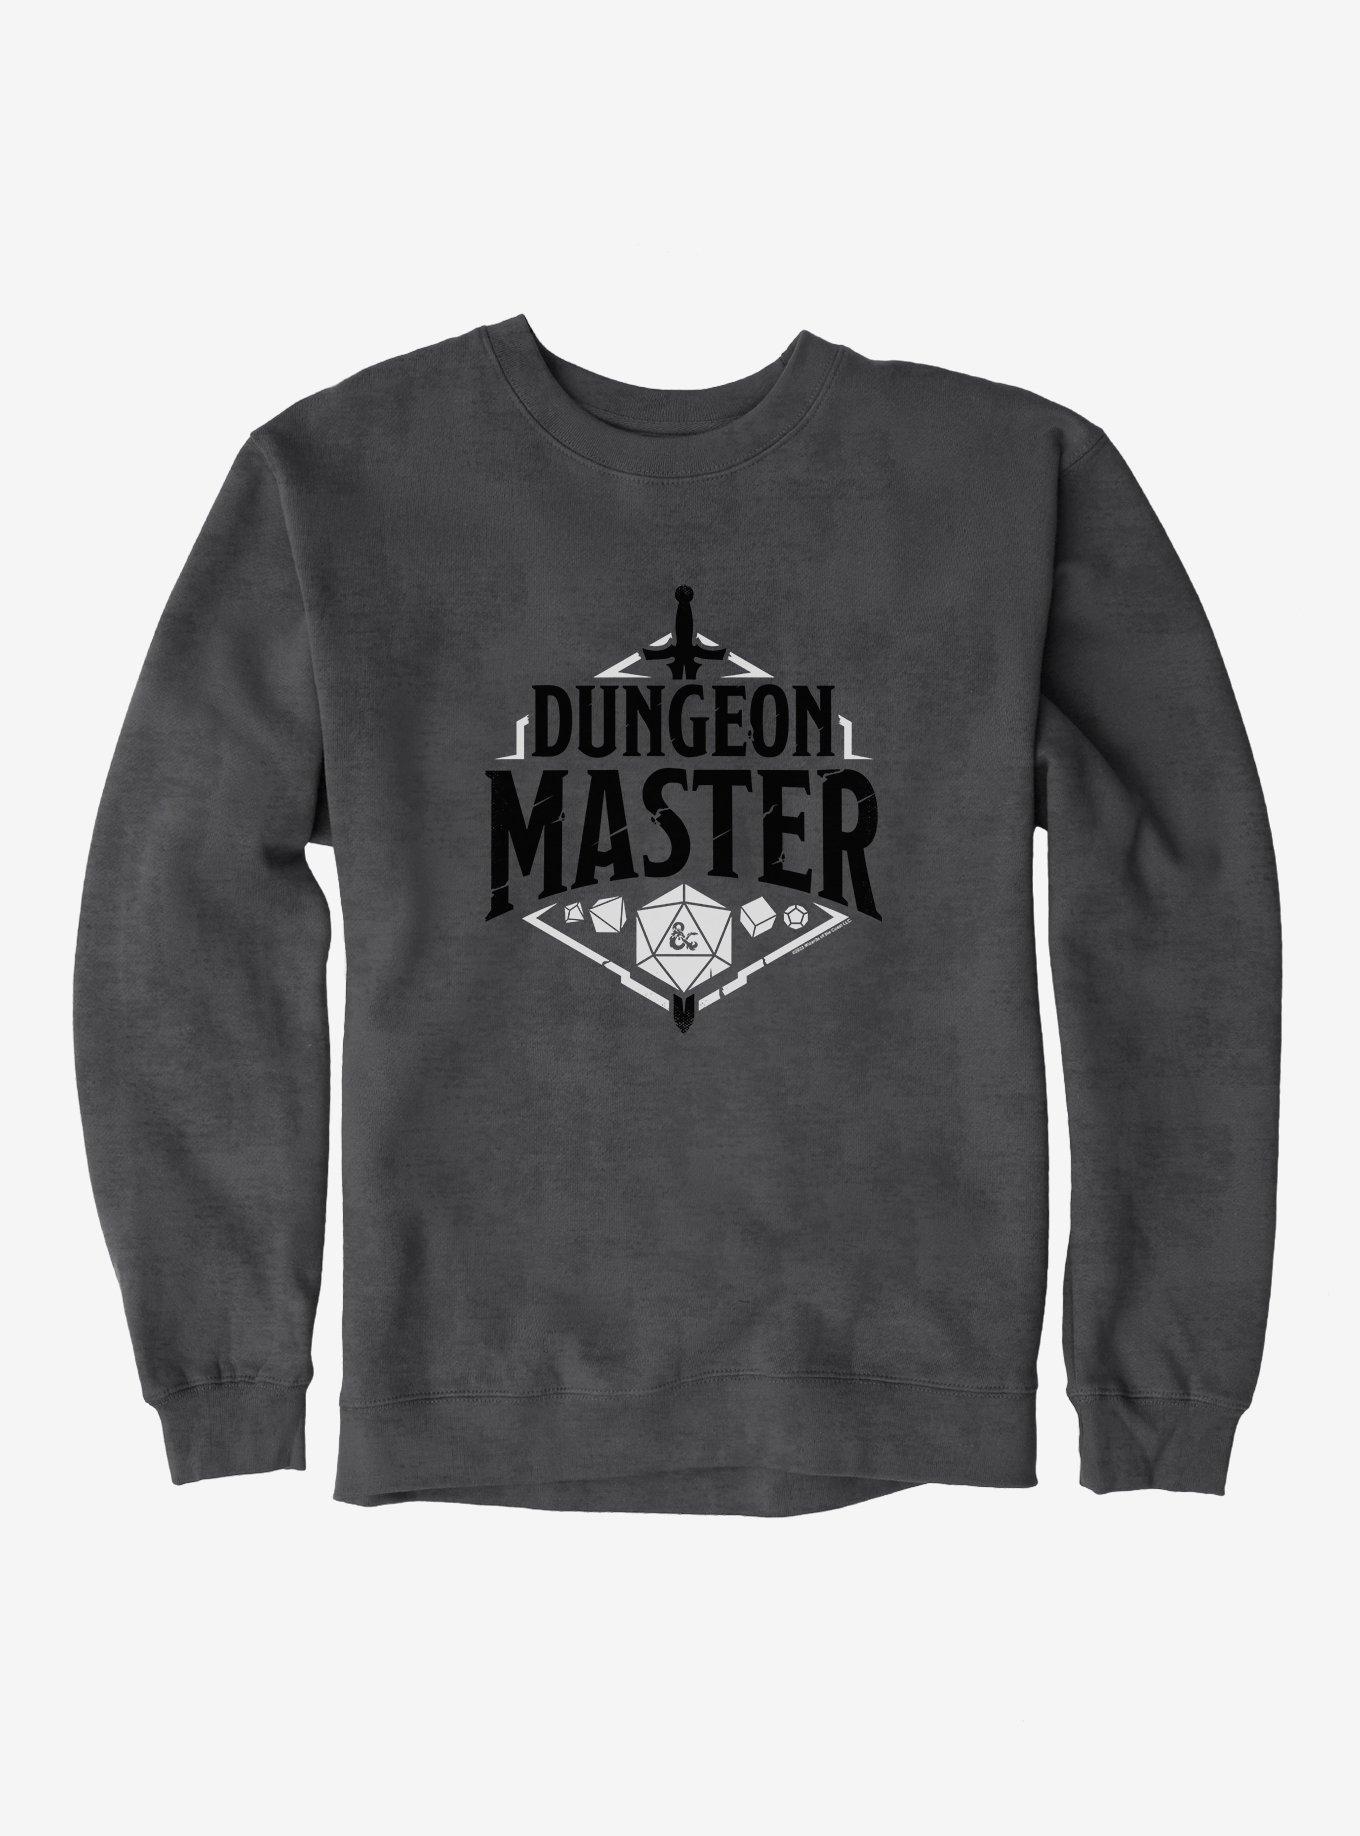 Dungeons & Dragons Dungeon Master Sweatshirt, DARK HEATHER, hi-res